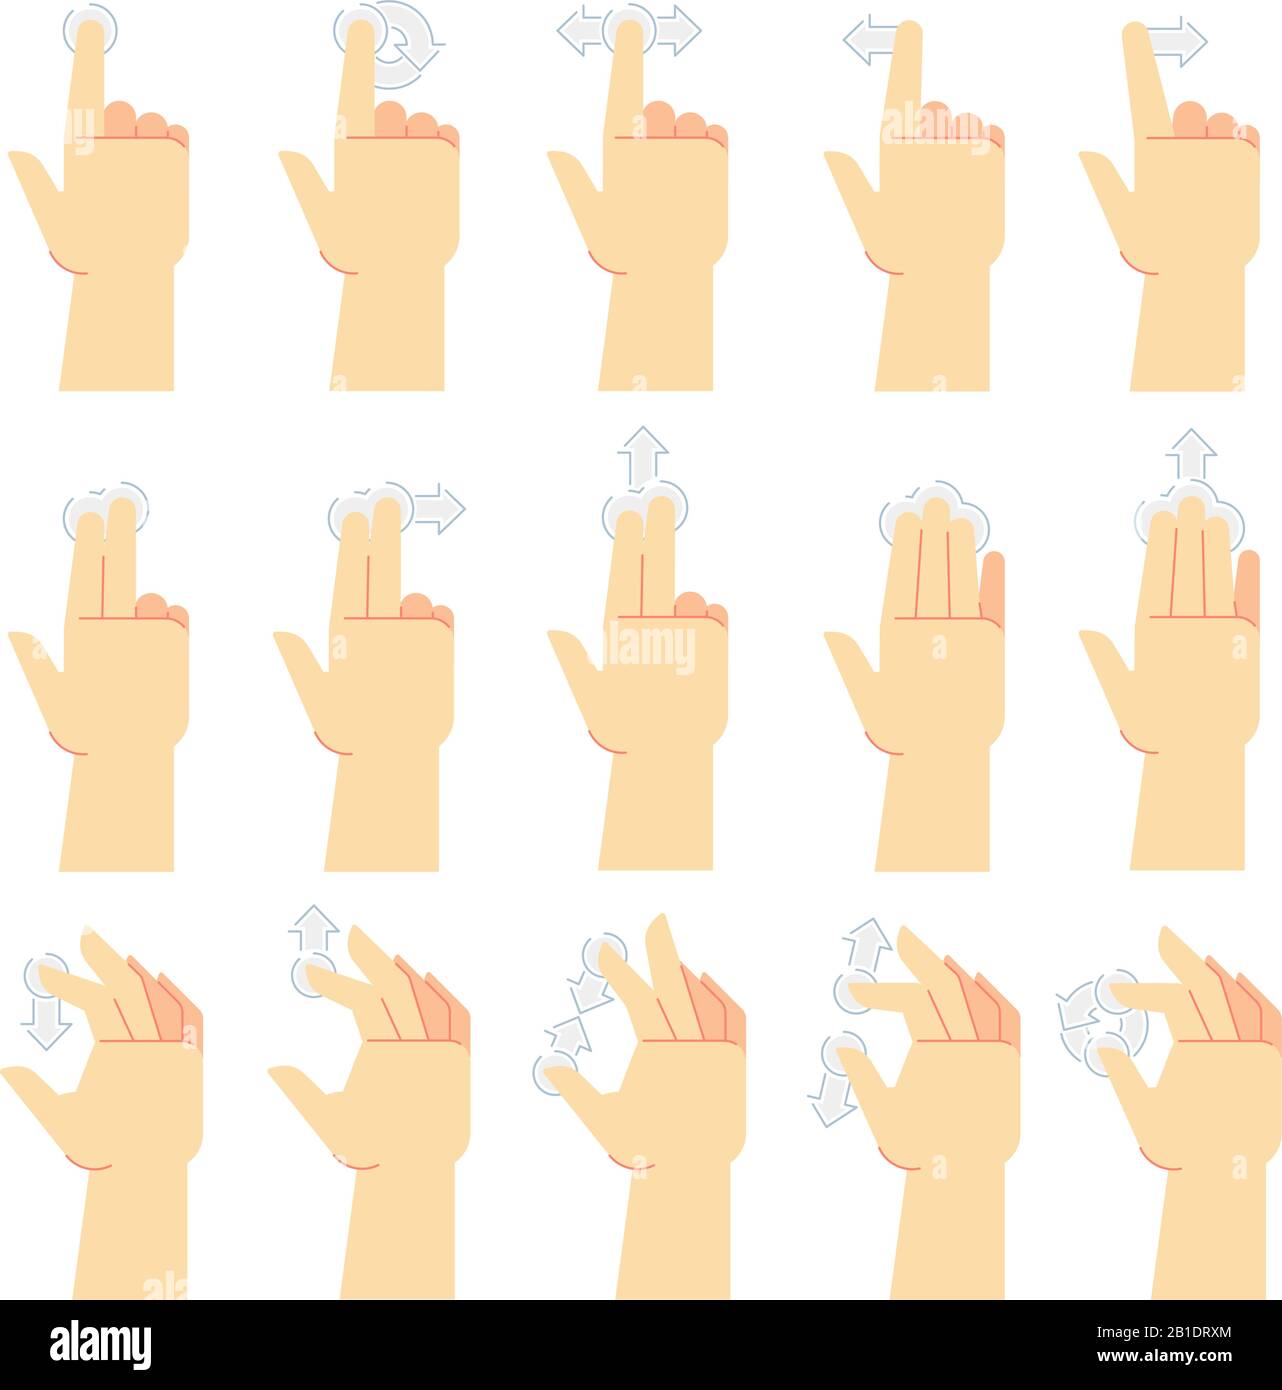 Mouvements de l'écran tactile. Touchez le doigt, faites glisser le doigt et touchez les écrans du smartphone à la main. Touchez jeu d'icônes vectorielles de dessin animé de l'interface utilisateur Illustration de Vecteur